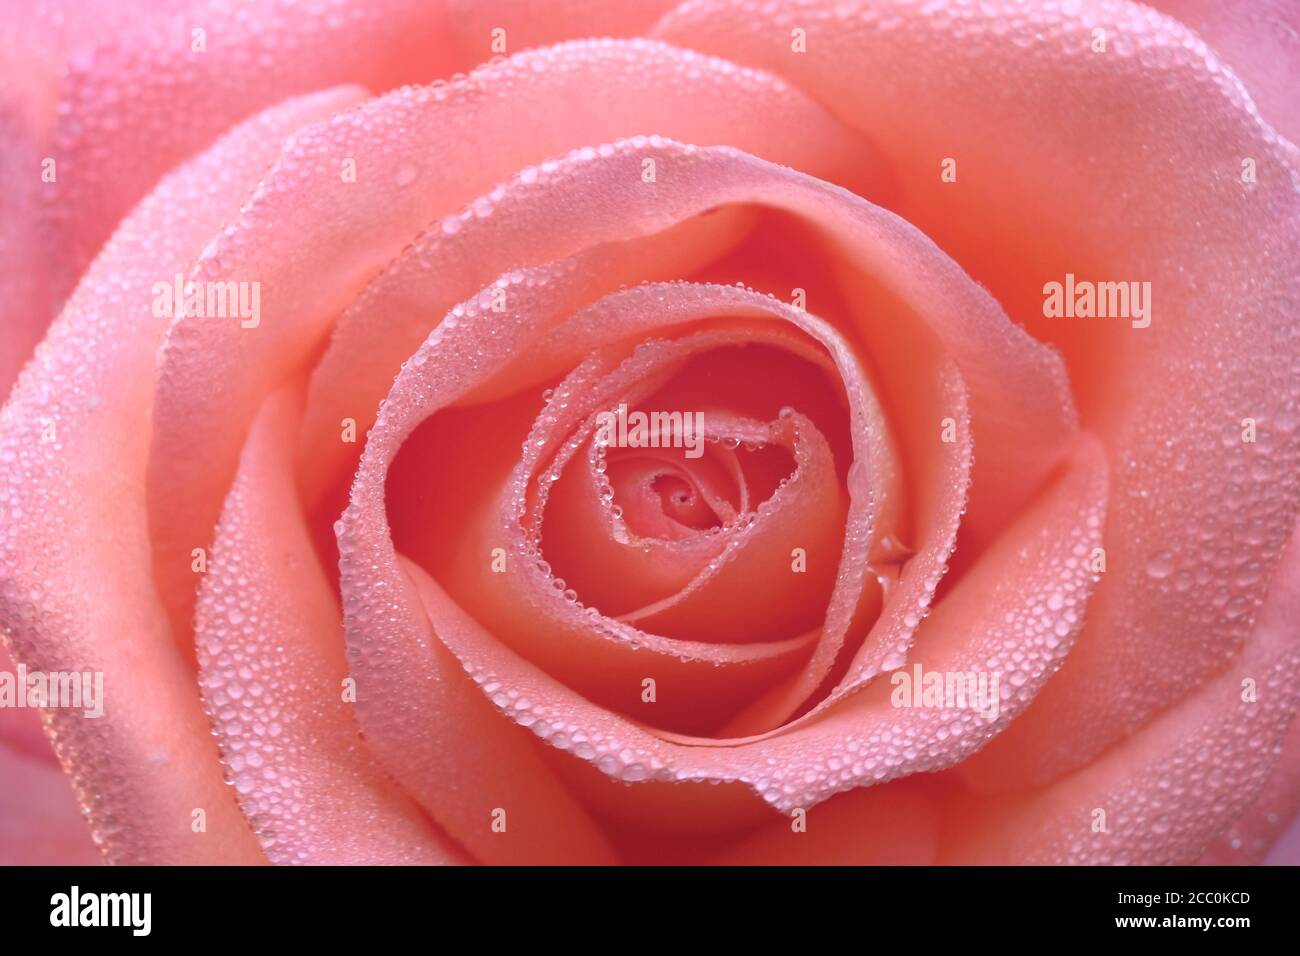 Rosa zarte schöne Rose Nahaufnahme. Tau tropft auf die Blütenblätter. Bild für Postkarten, Hochzeitseinladungen, Vollformat. Stockfoto